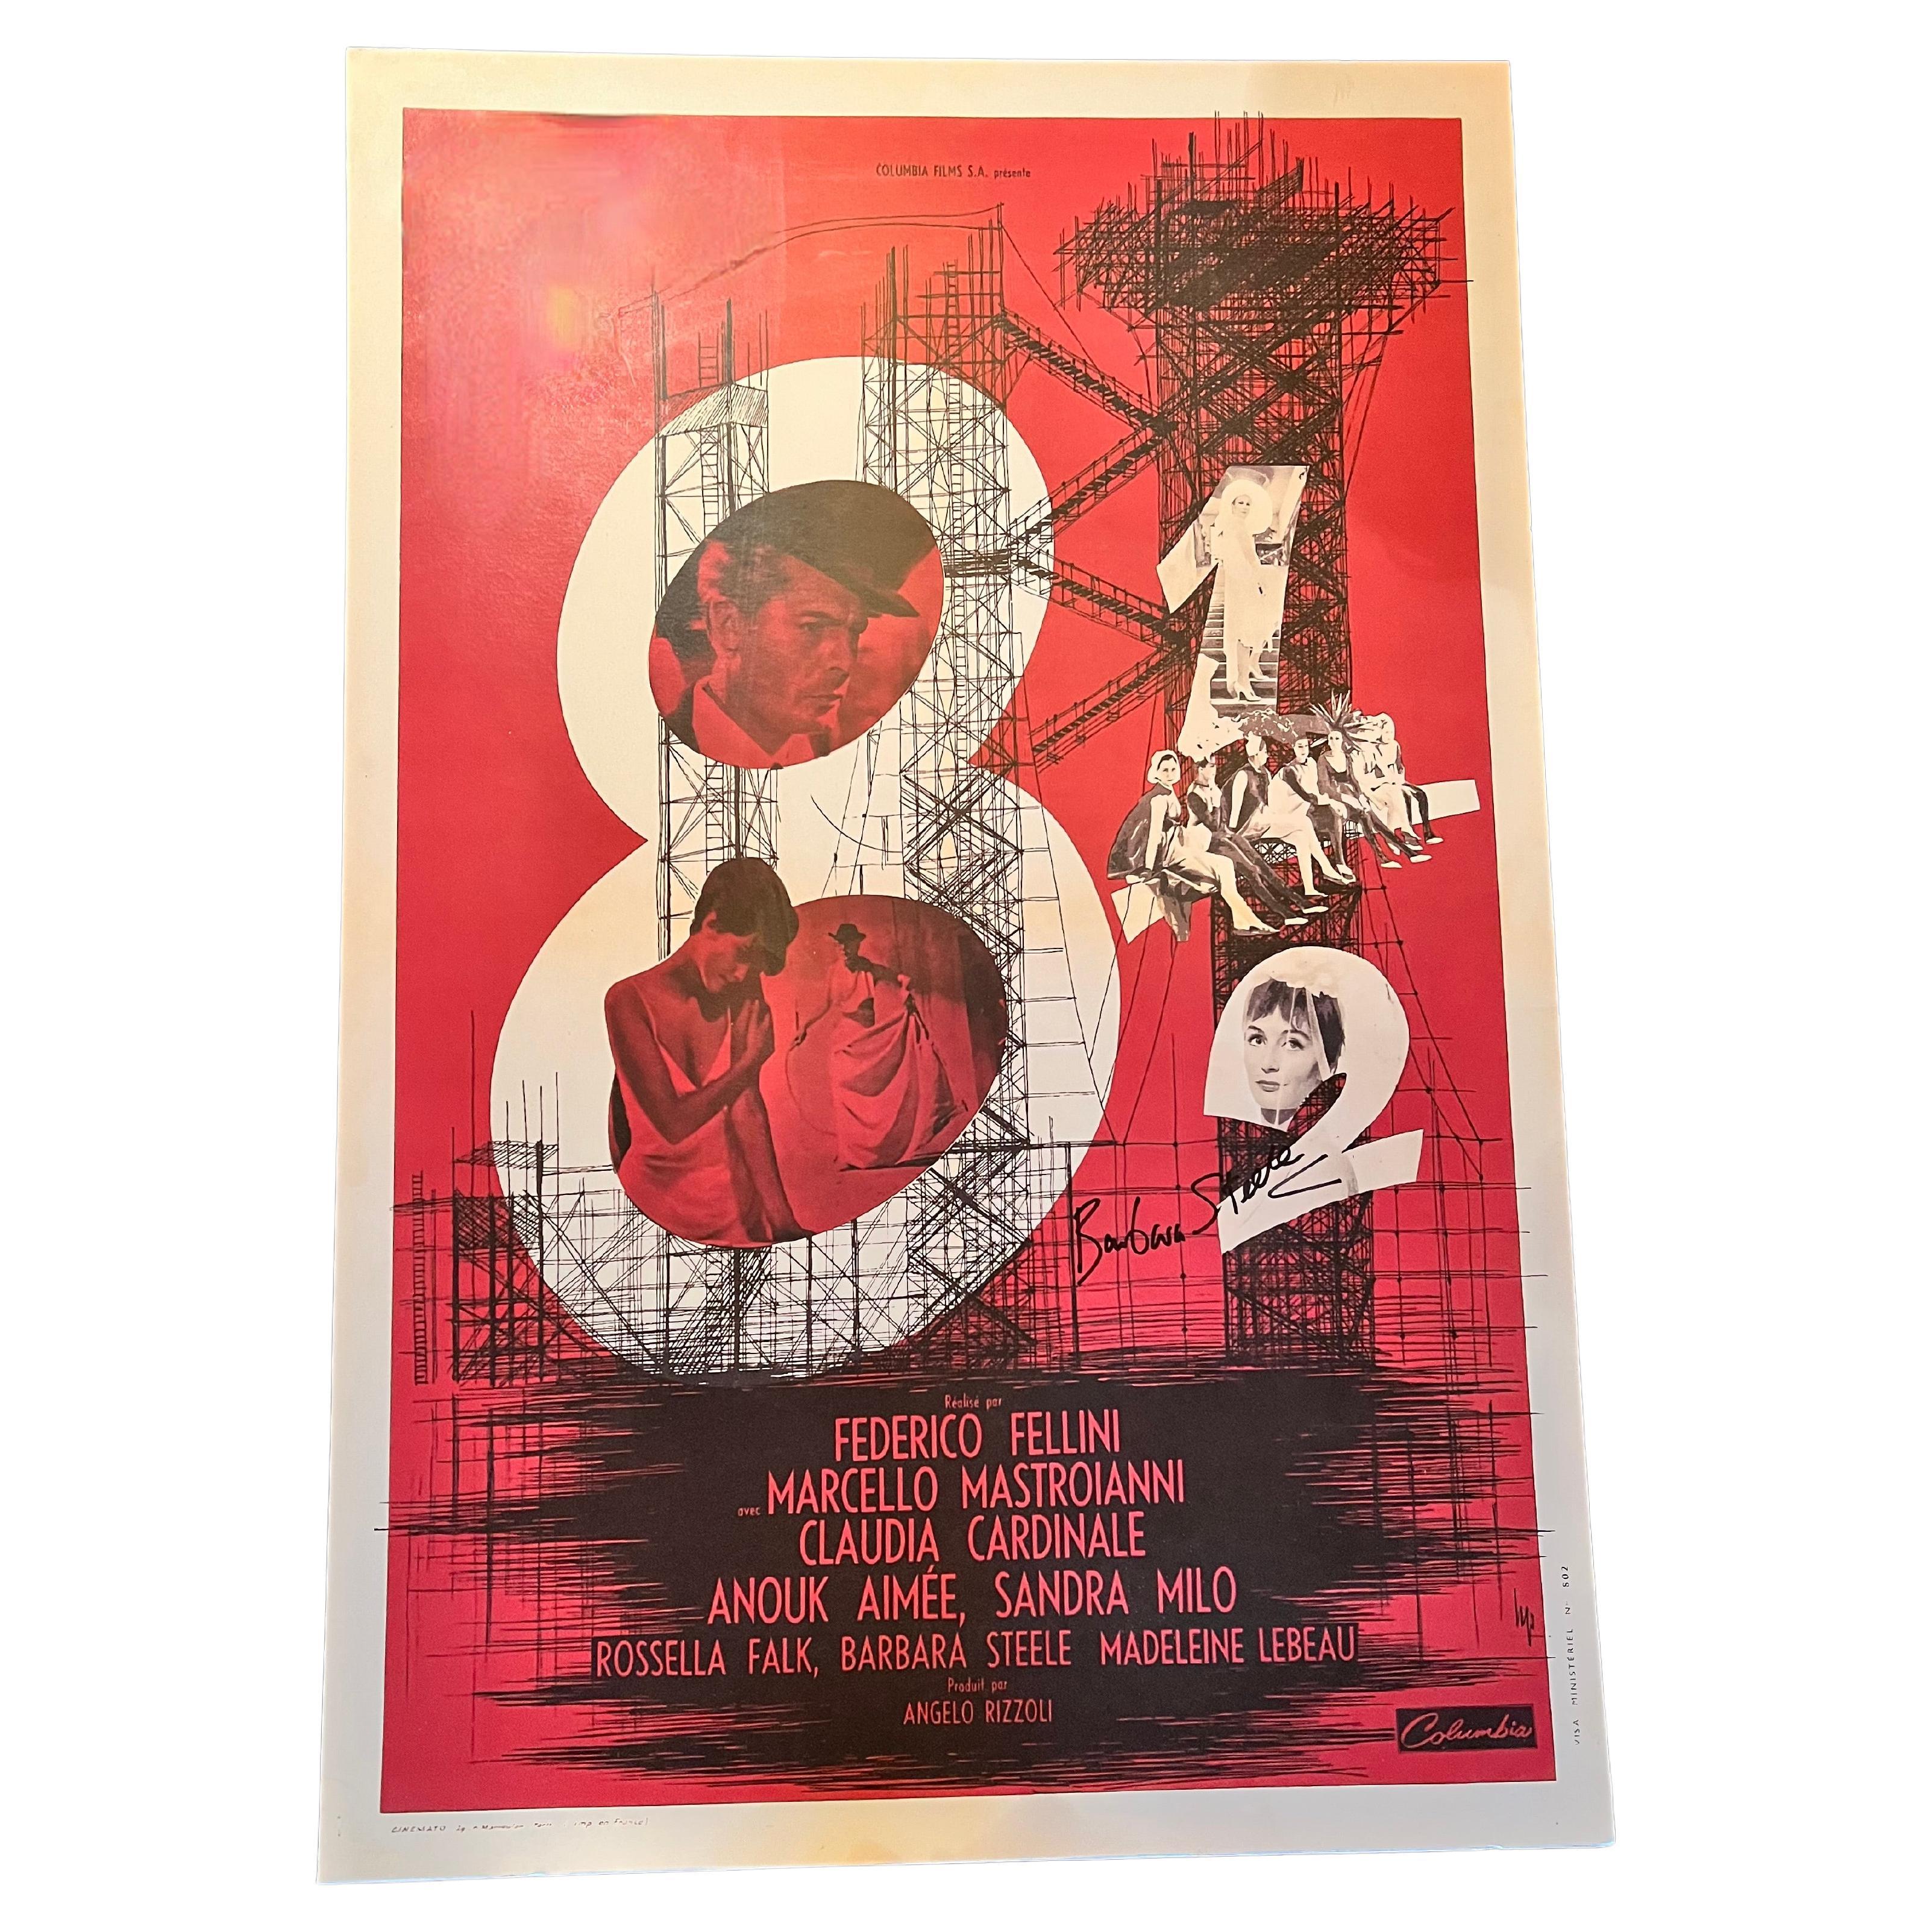 Affiche de film 8 1/2 de Federico Fellini signée par l'une des stars et l'un des acteurs, Barbara Steele. L'affiche est une impression de l'une des affiches originales du film de 1963. L'affiche n'est pas orignina. Le poster est en bon état et monté